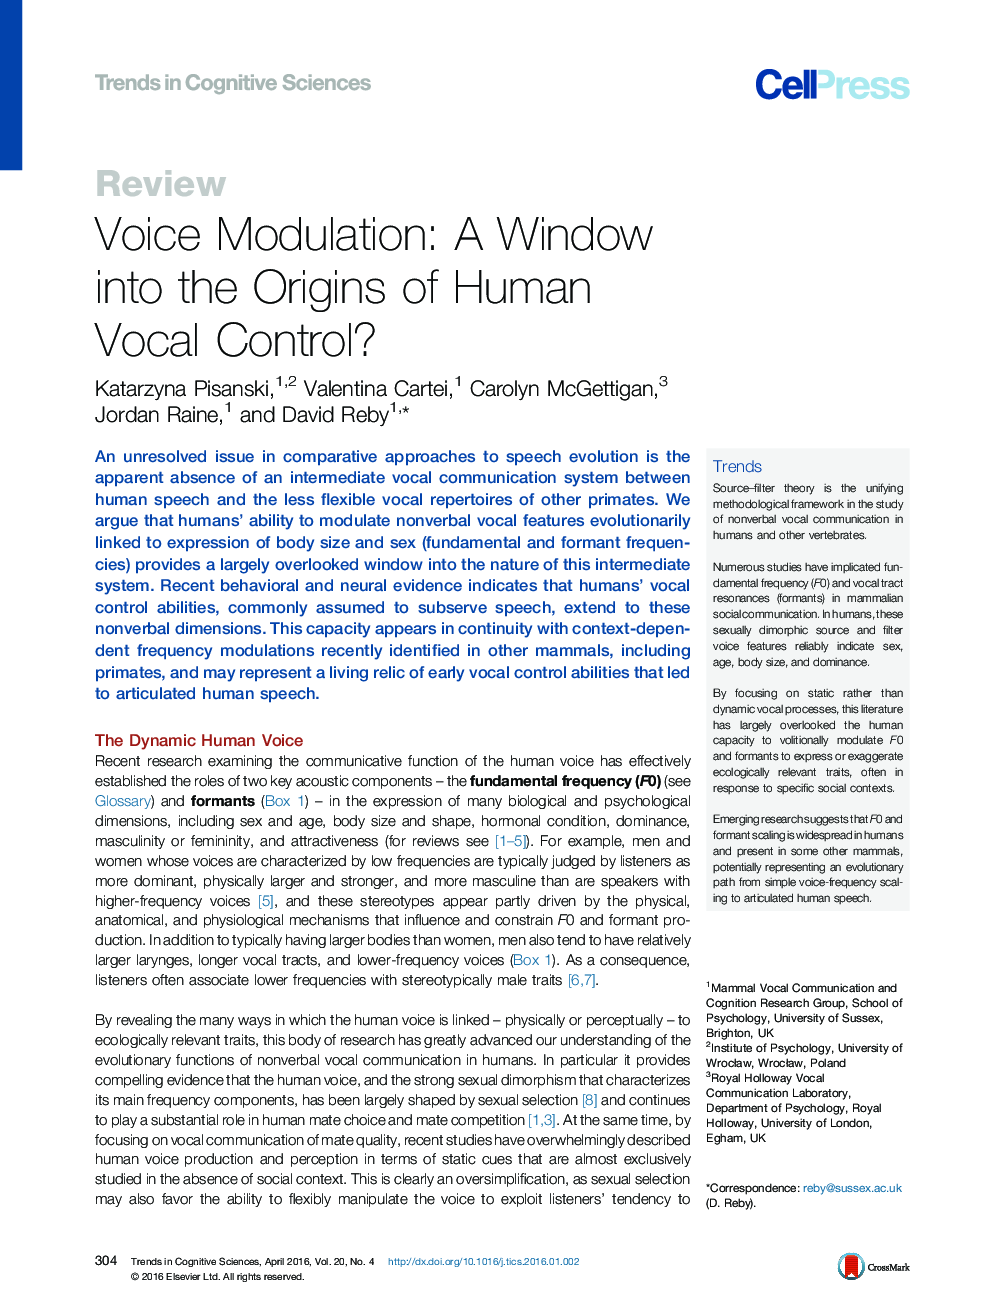 مدولاسیون صدا: یک پنجره به ریشه های کنترل صوتی انسان ؟